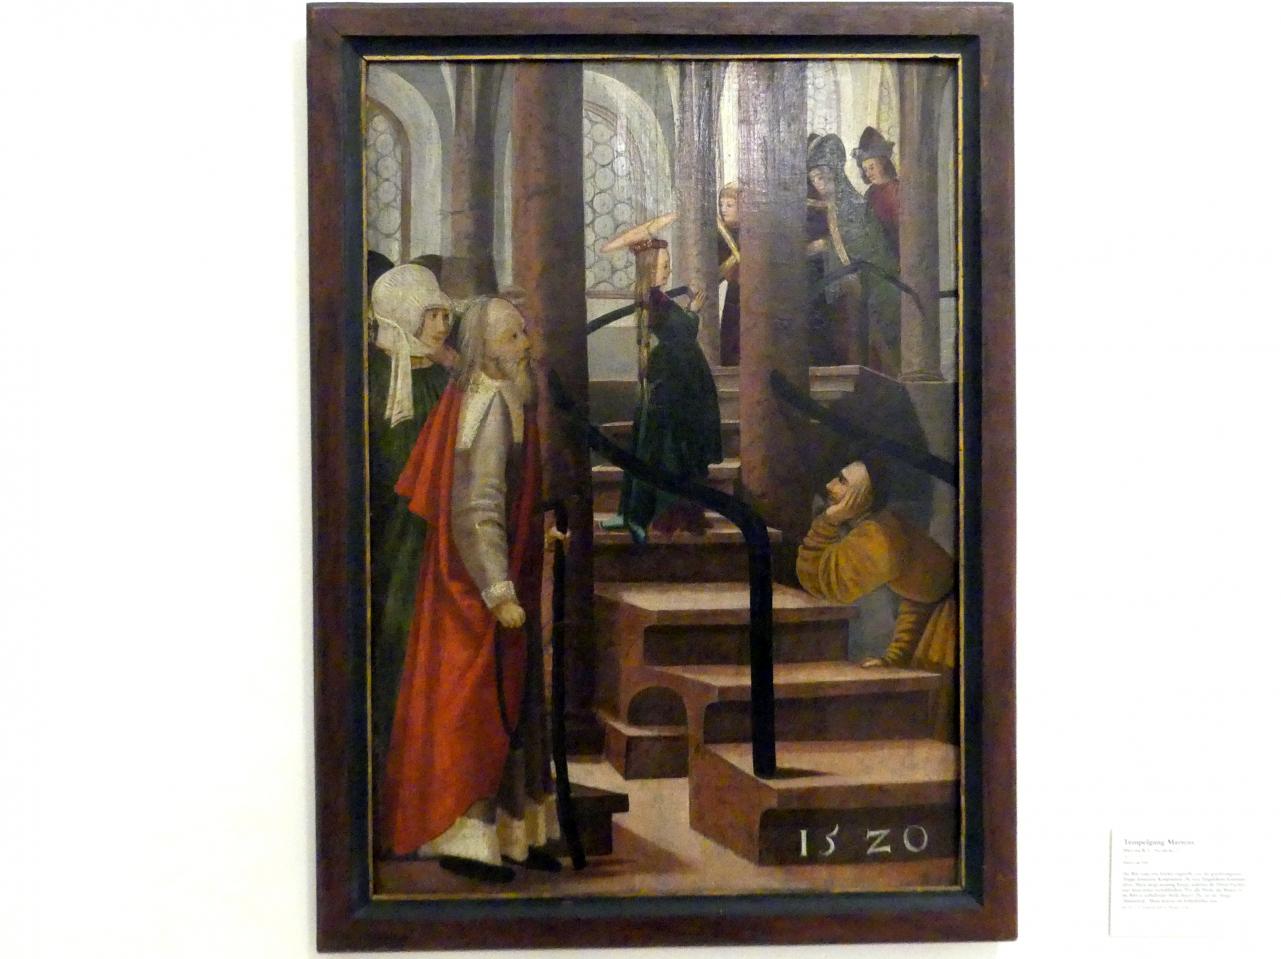 Meister R. L. (1520), Tempelgang Mariens, Linz, Oberösterreichisches Landesmuseum, Die Kunst der Donauschule, 1520